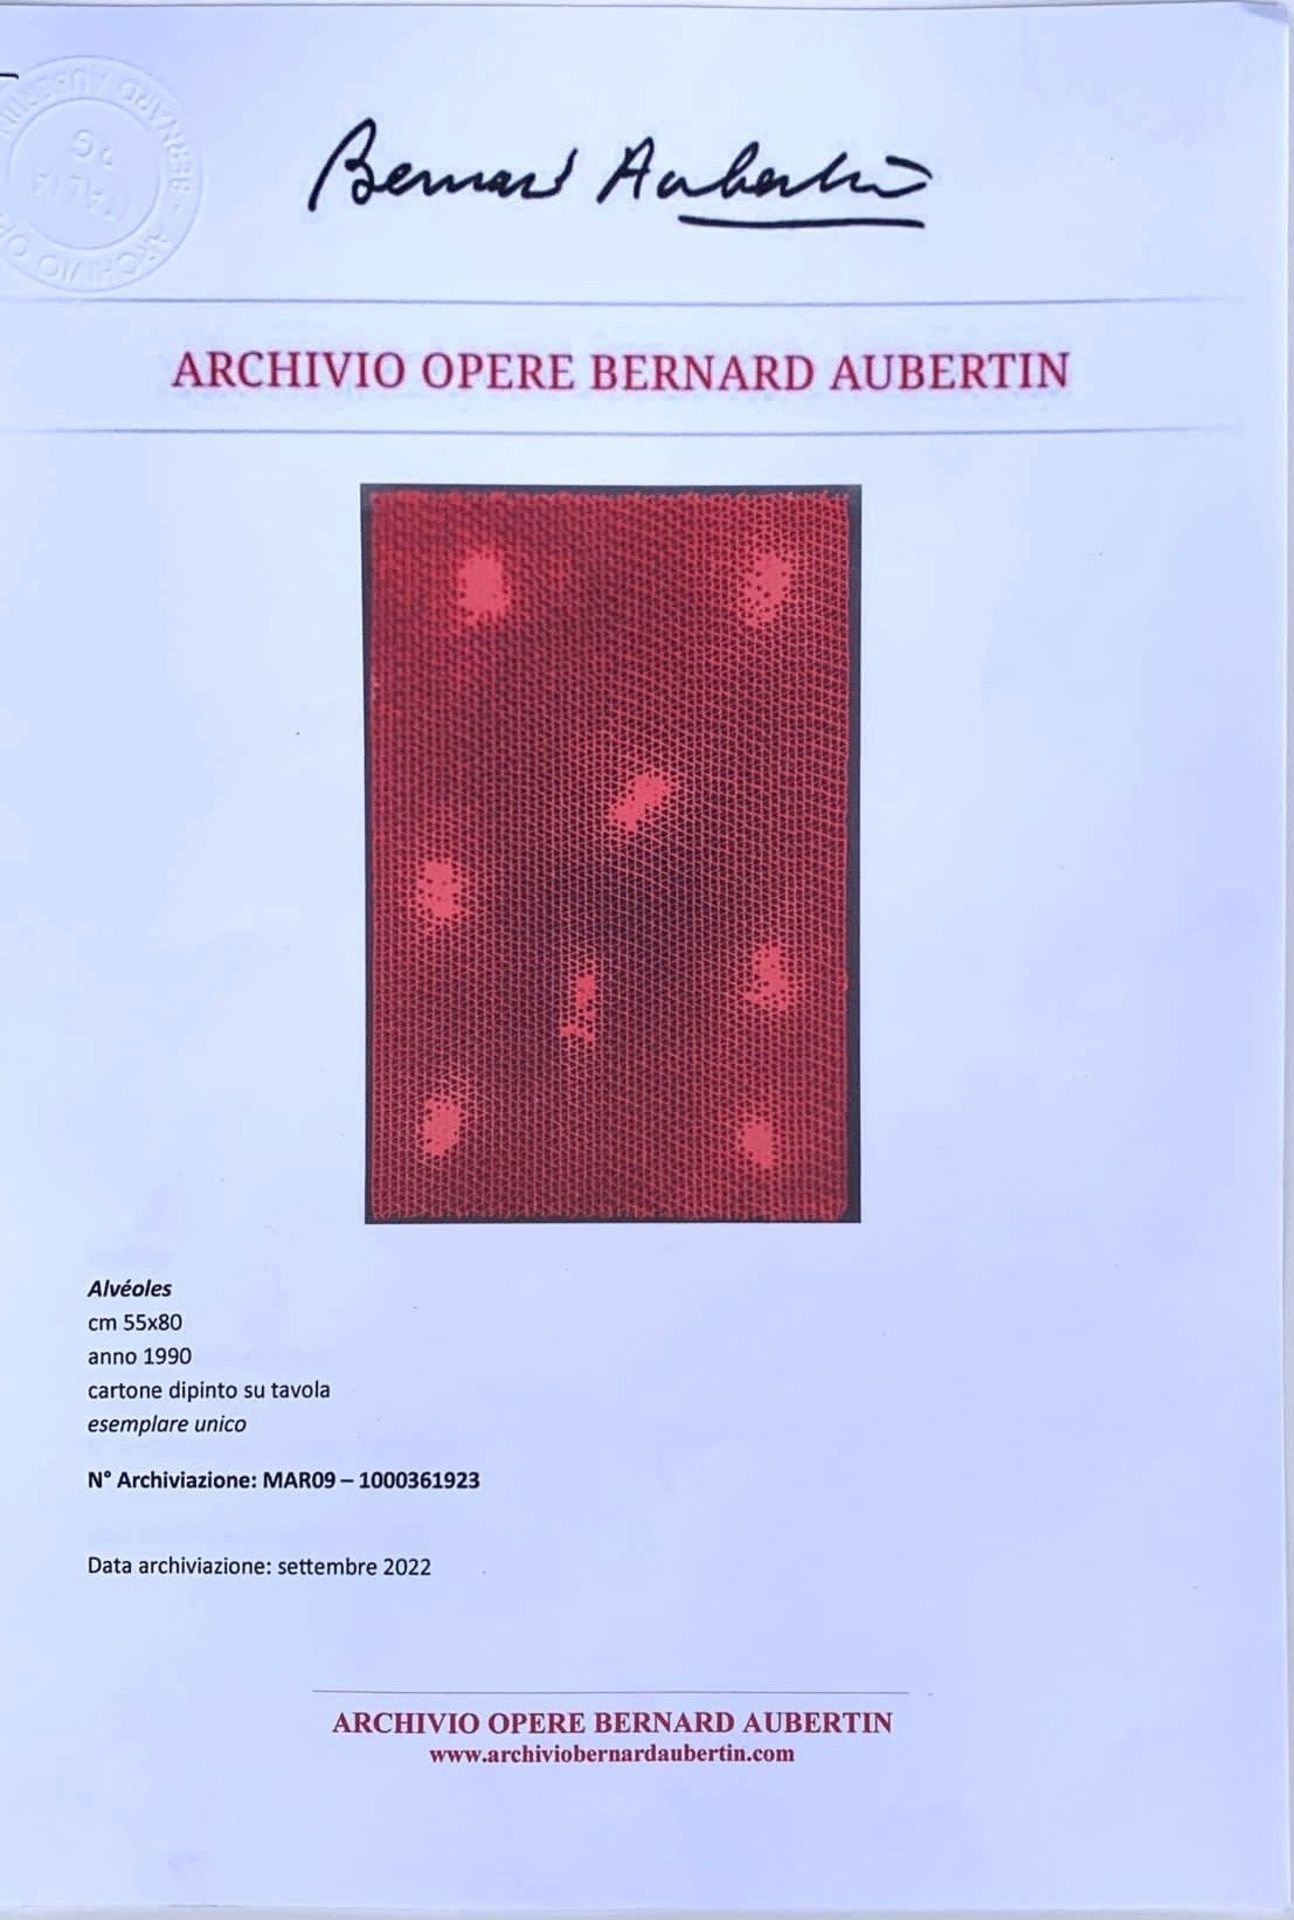 BERNARD AUBERTIN - RELIEF - Image 5 of 6